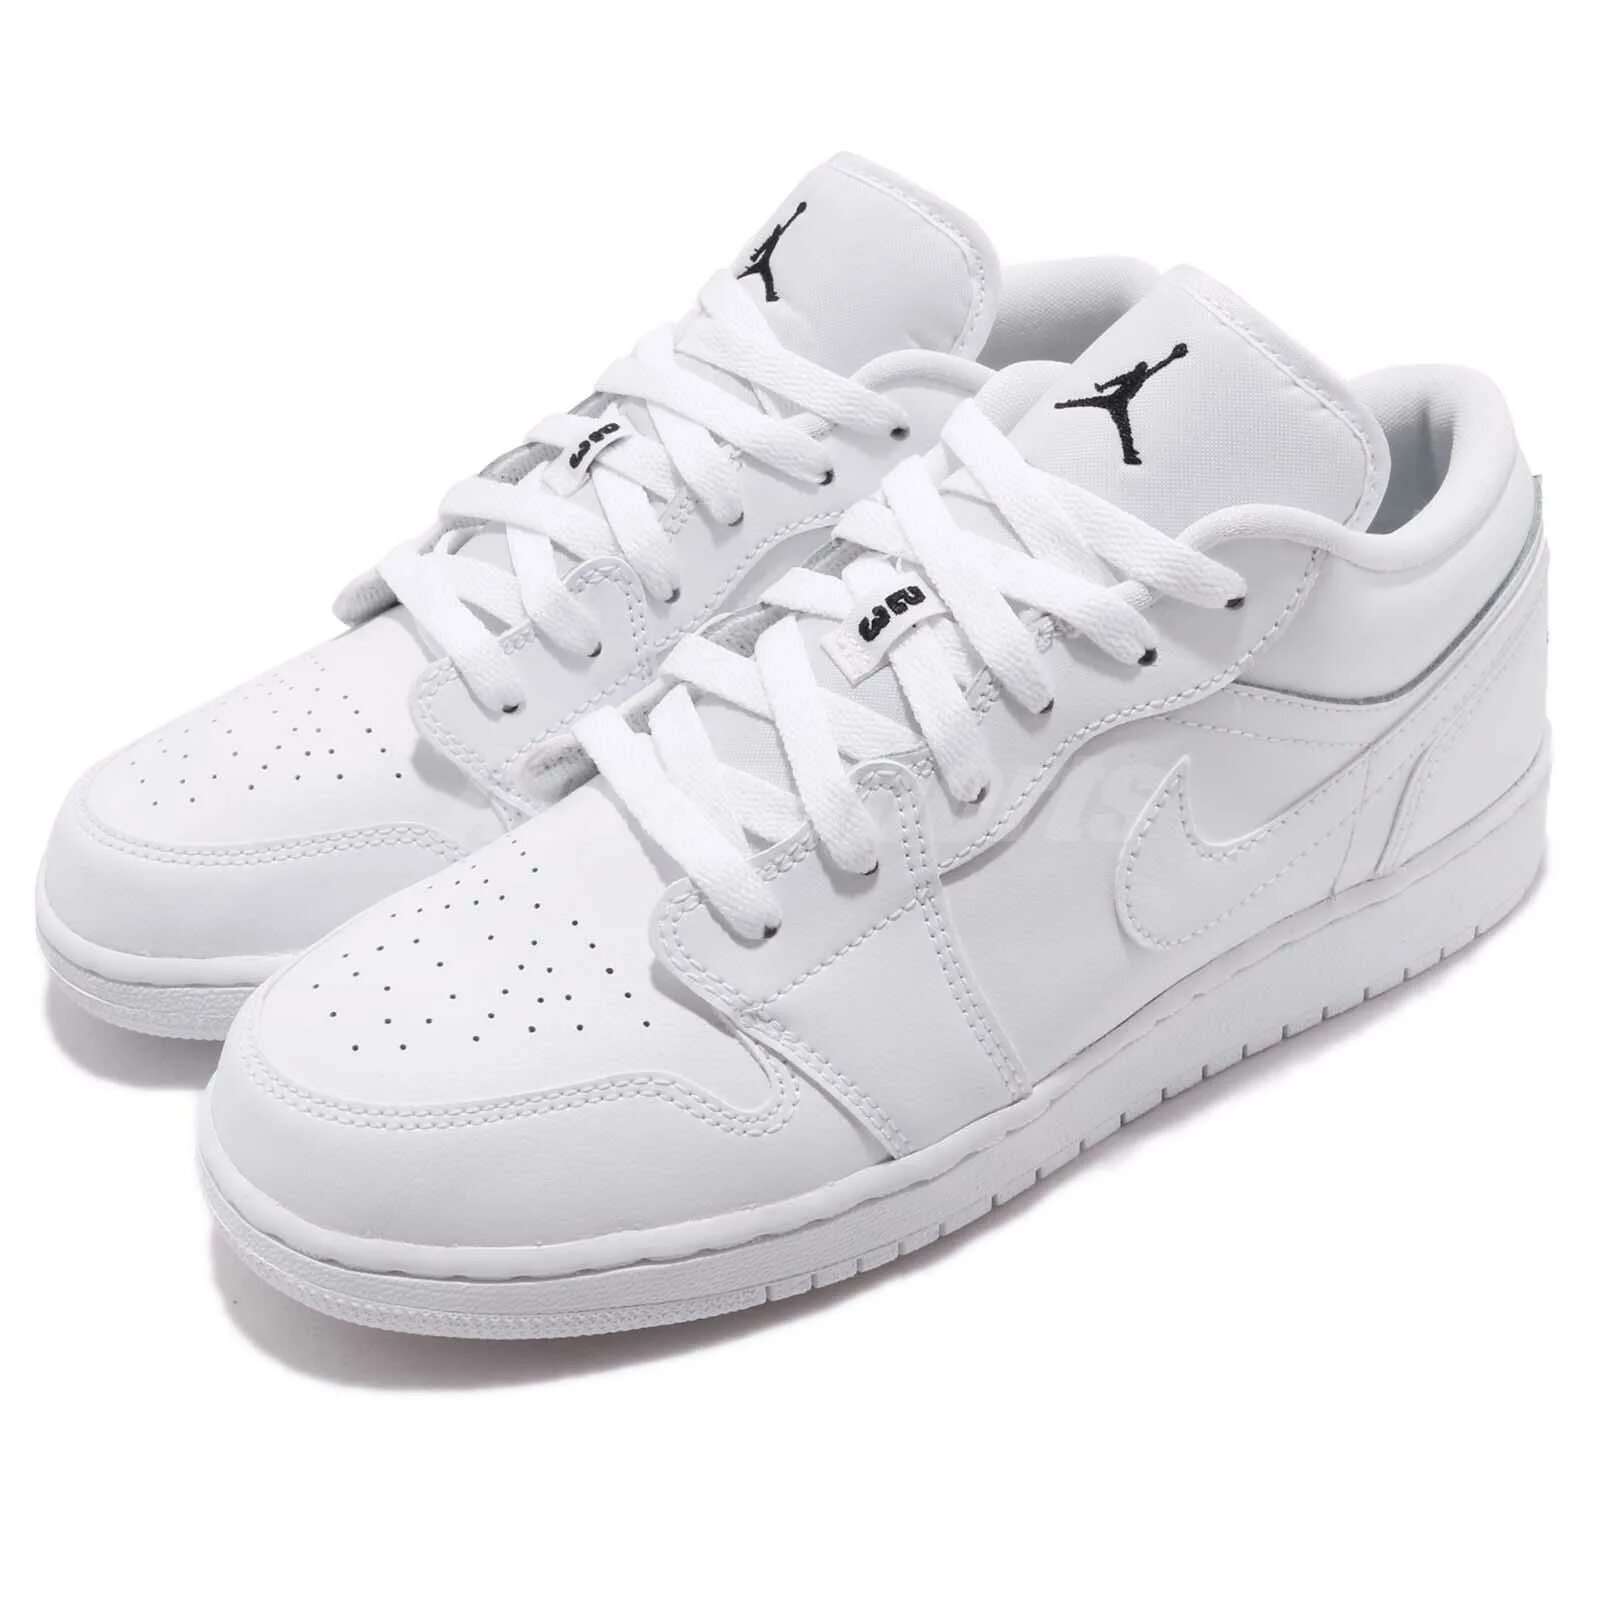 Nike Air Jordan 1 Low White. Nike Air Jordan Low White. Nike Air Jordan 1 Low. Nike Air Jordan 1 Low белые. Низкие джорданы 1